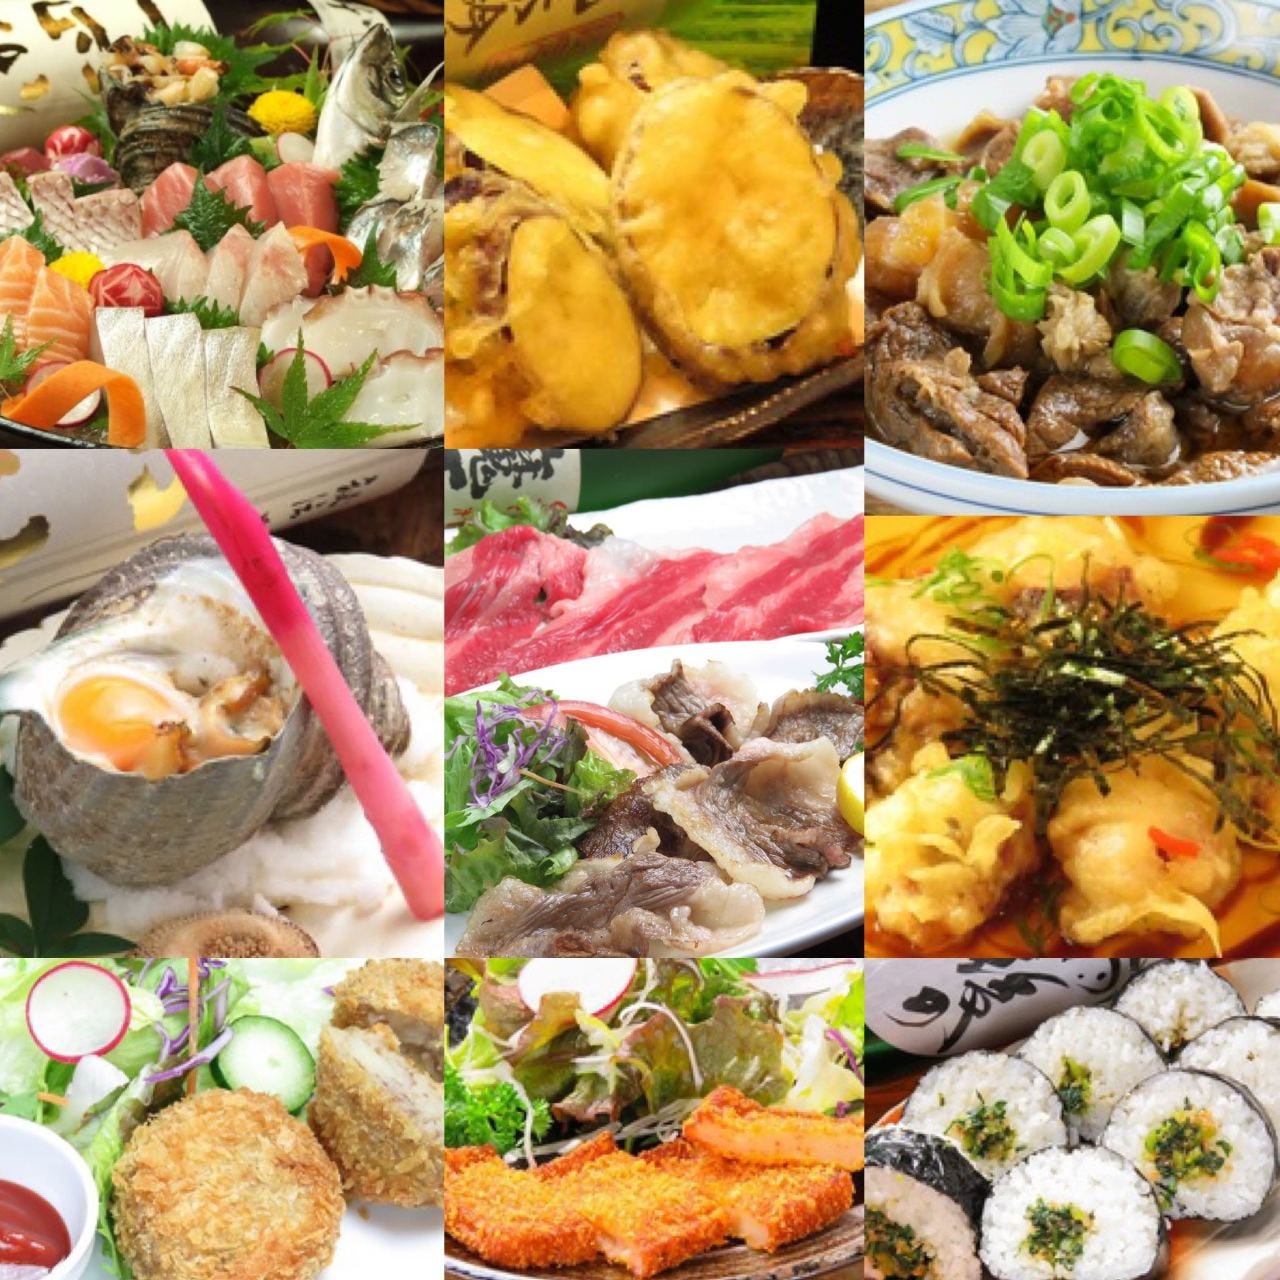 瀬戸内の魚介類を始め広島の食る材を多く取り入れています。